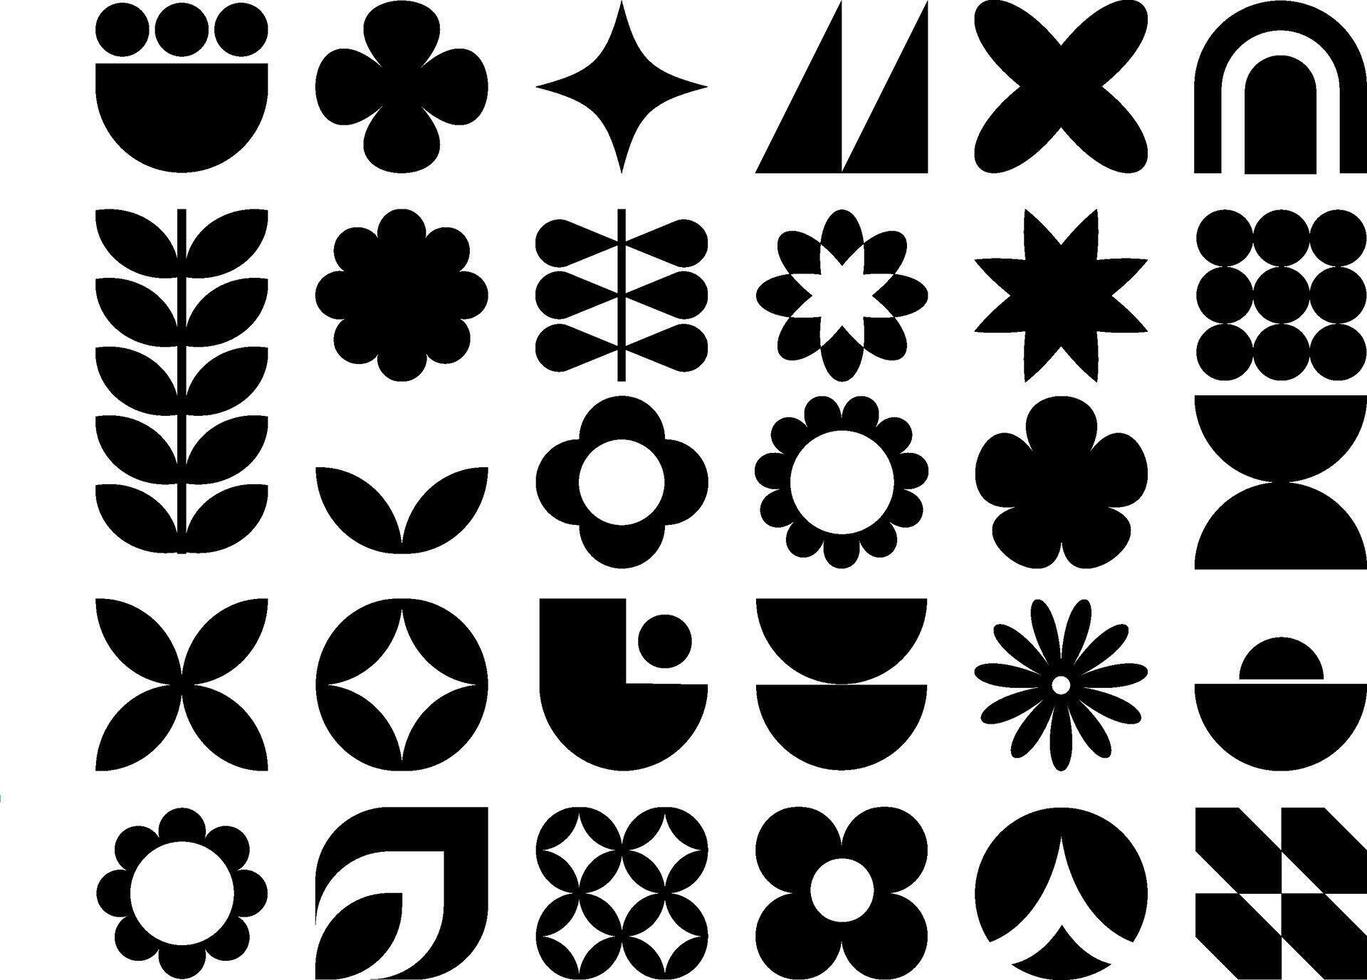 Vektor einstellen von schwarz Brutalist Bauhaus geometrisch Formen. modisch abstrakt minimalistisch Zahlen, Sterne, Blumen, Kreise. modern Design Elemente